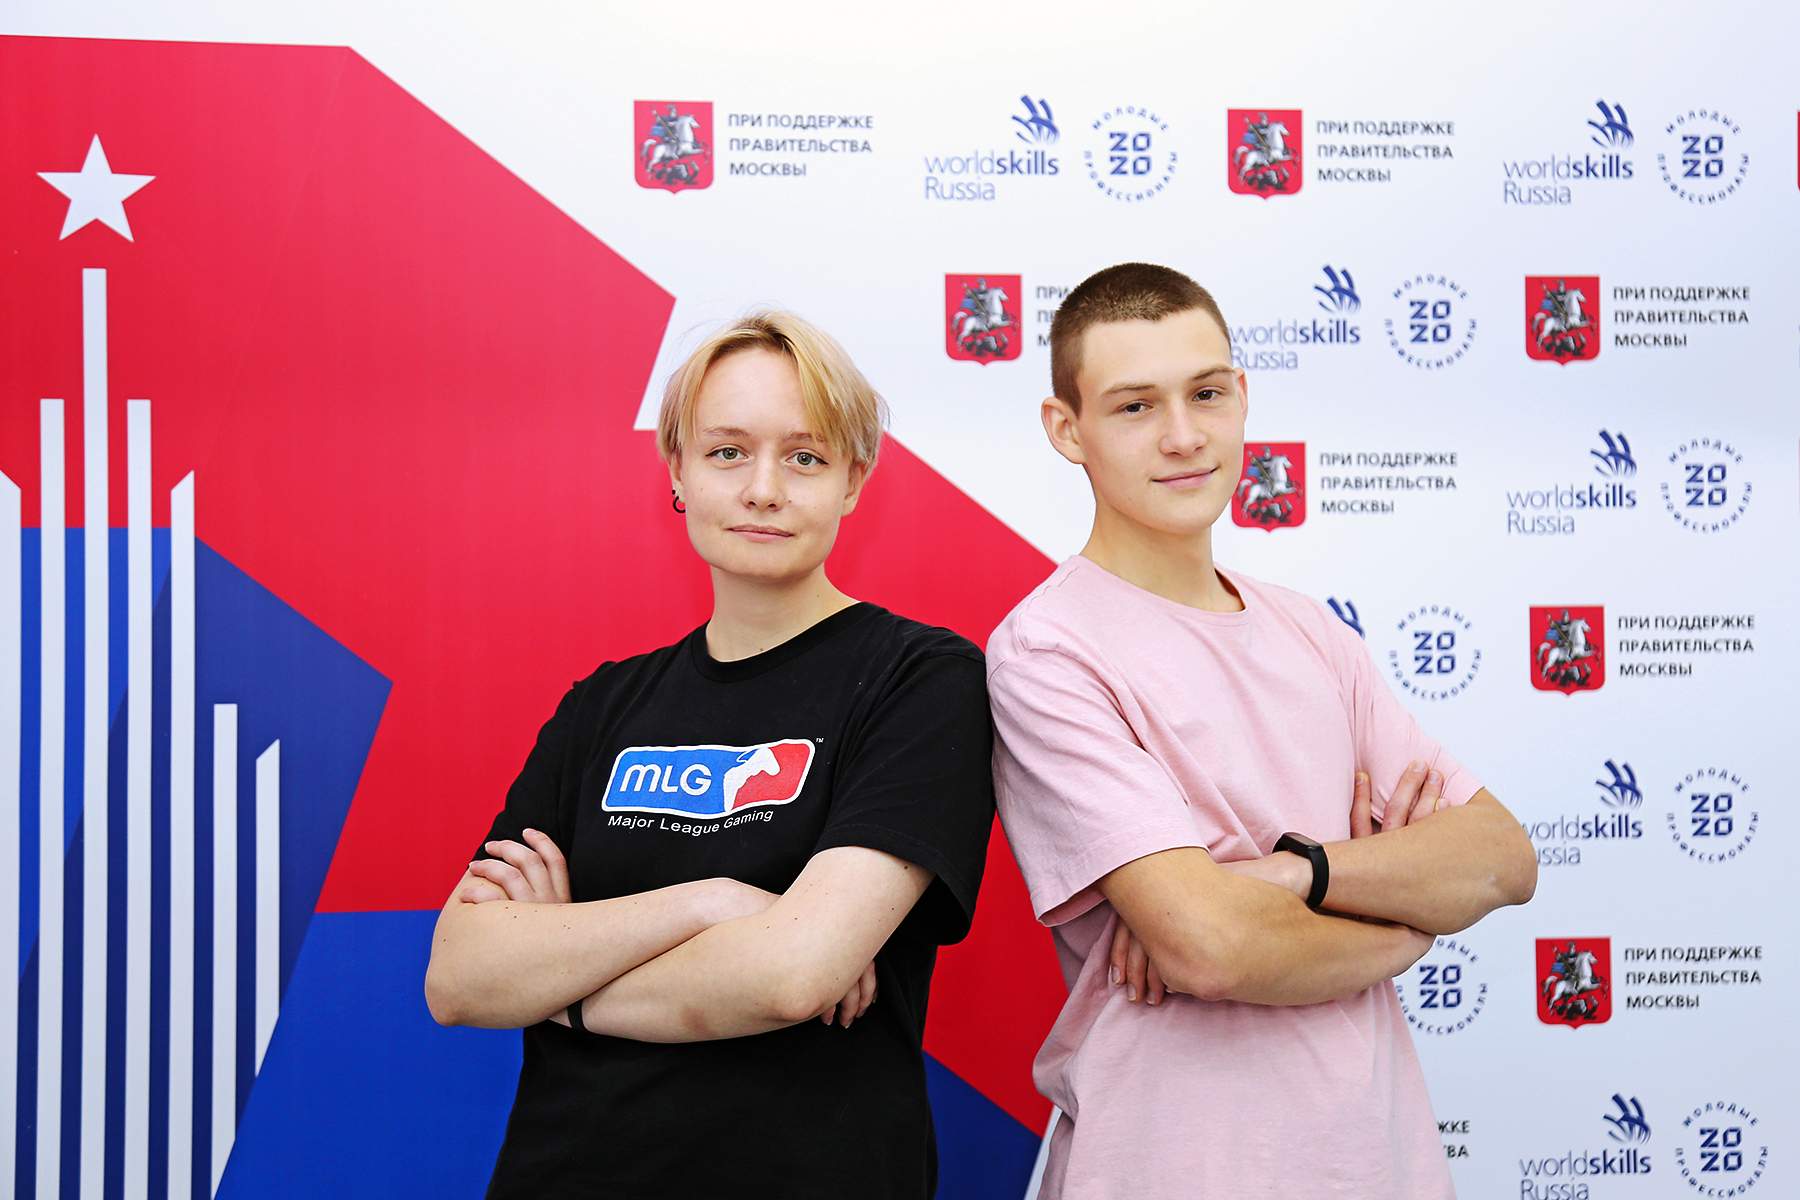 VII региональный чемпионат «Молодые профессионалы» во ВГУЭС: соревнования пройдут по 10-ти компетенциям